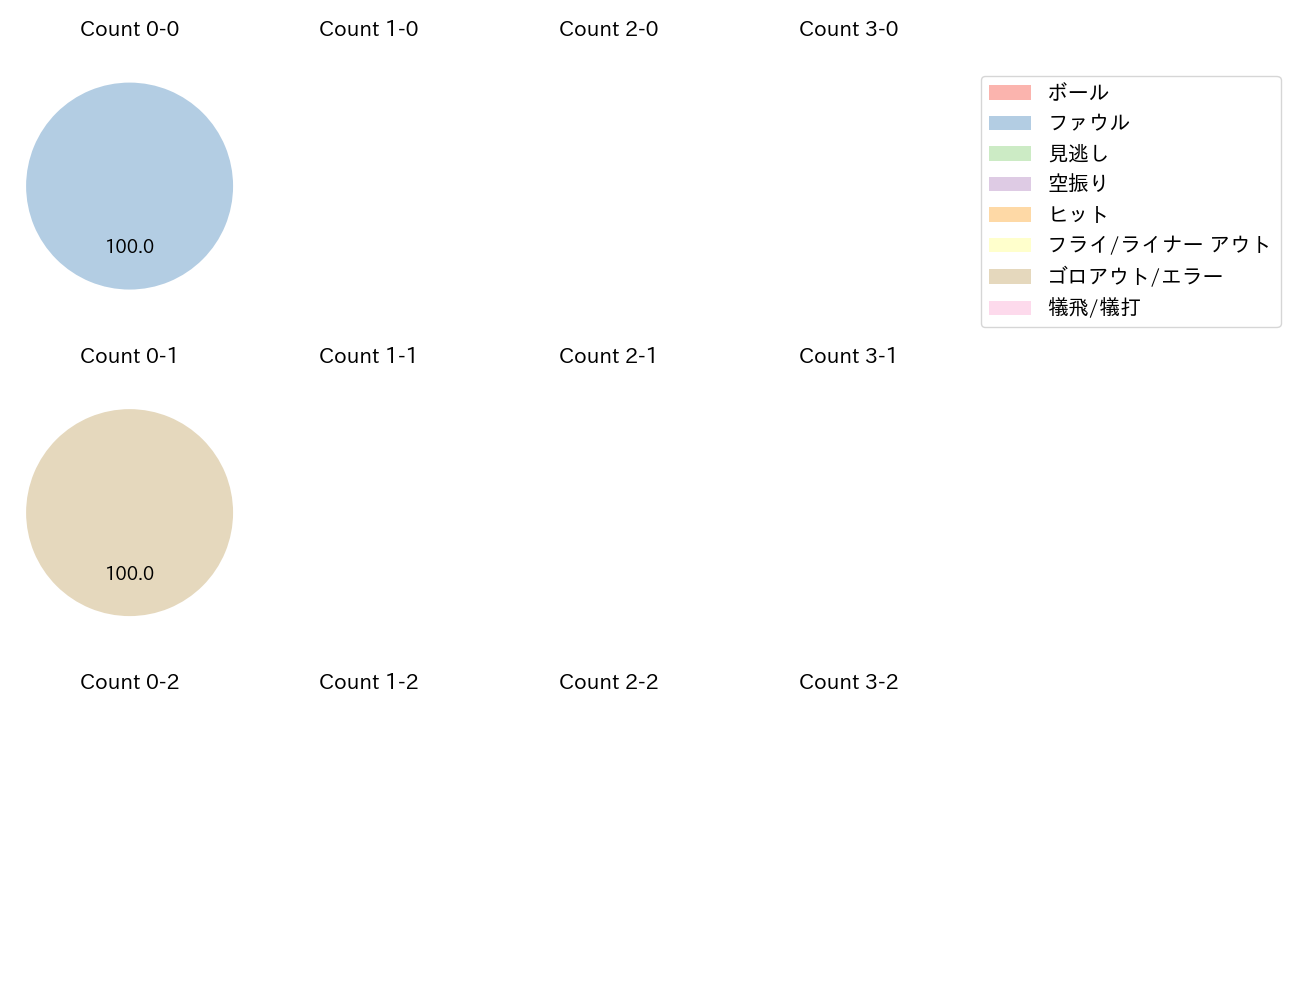 熊谷 敬宥の球数分布(2023年4月)